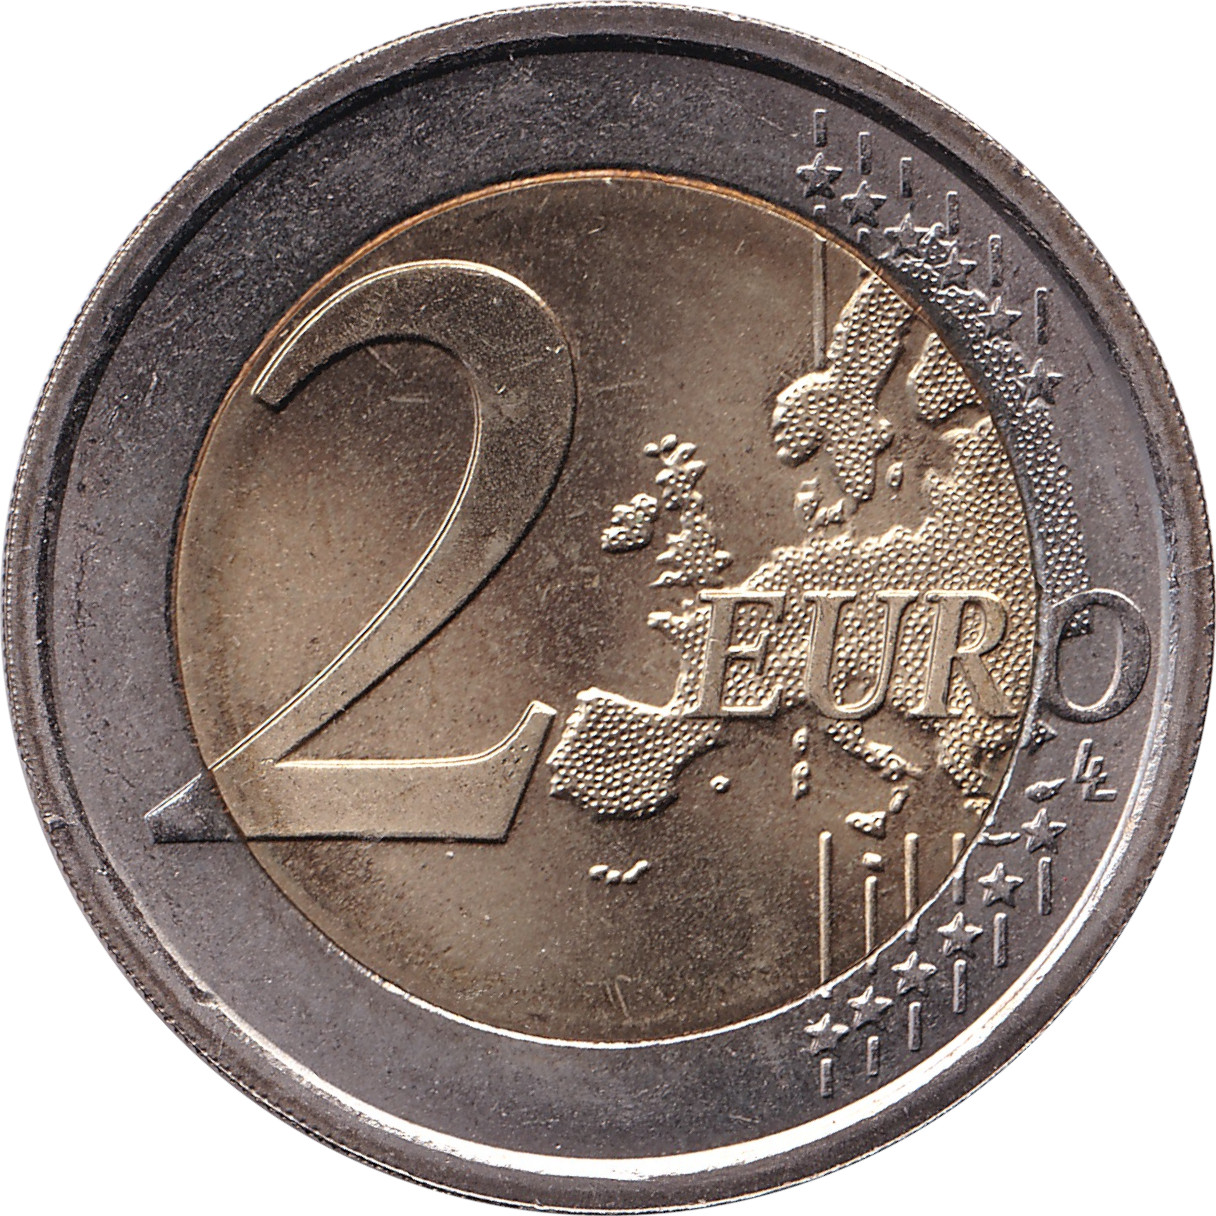 2 euro - Traité de Rome - Italie